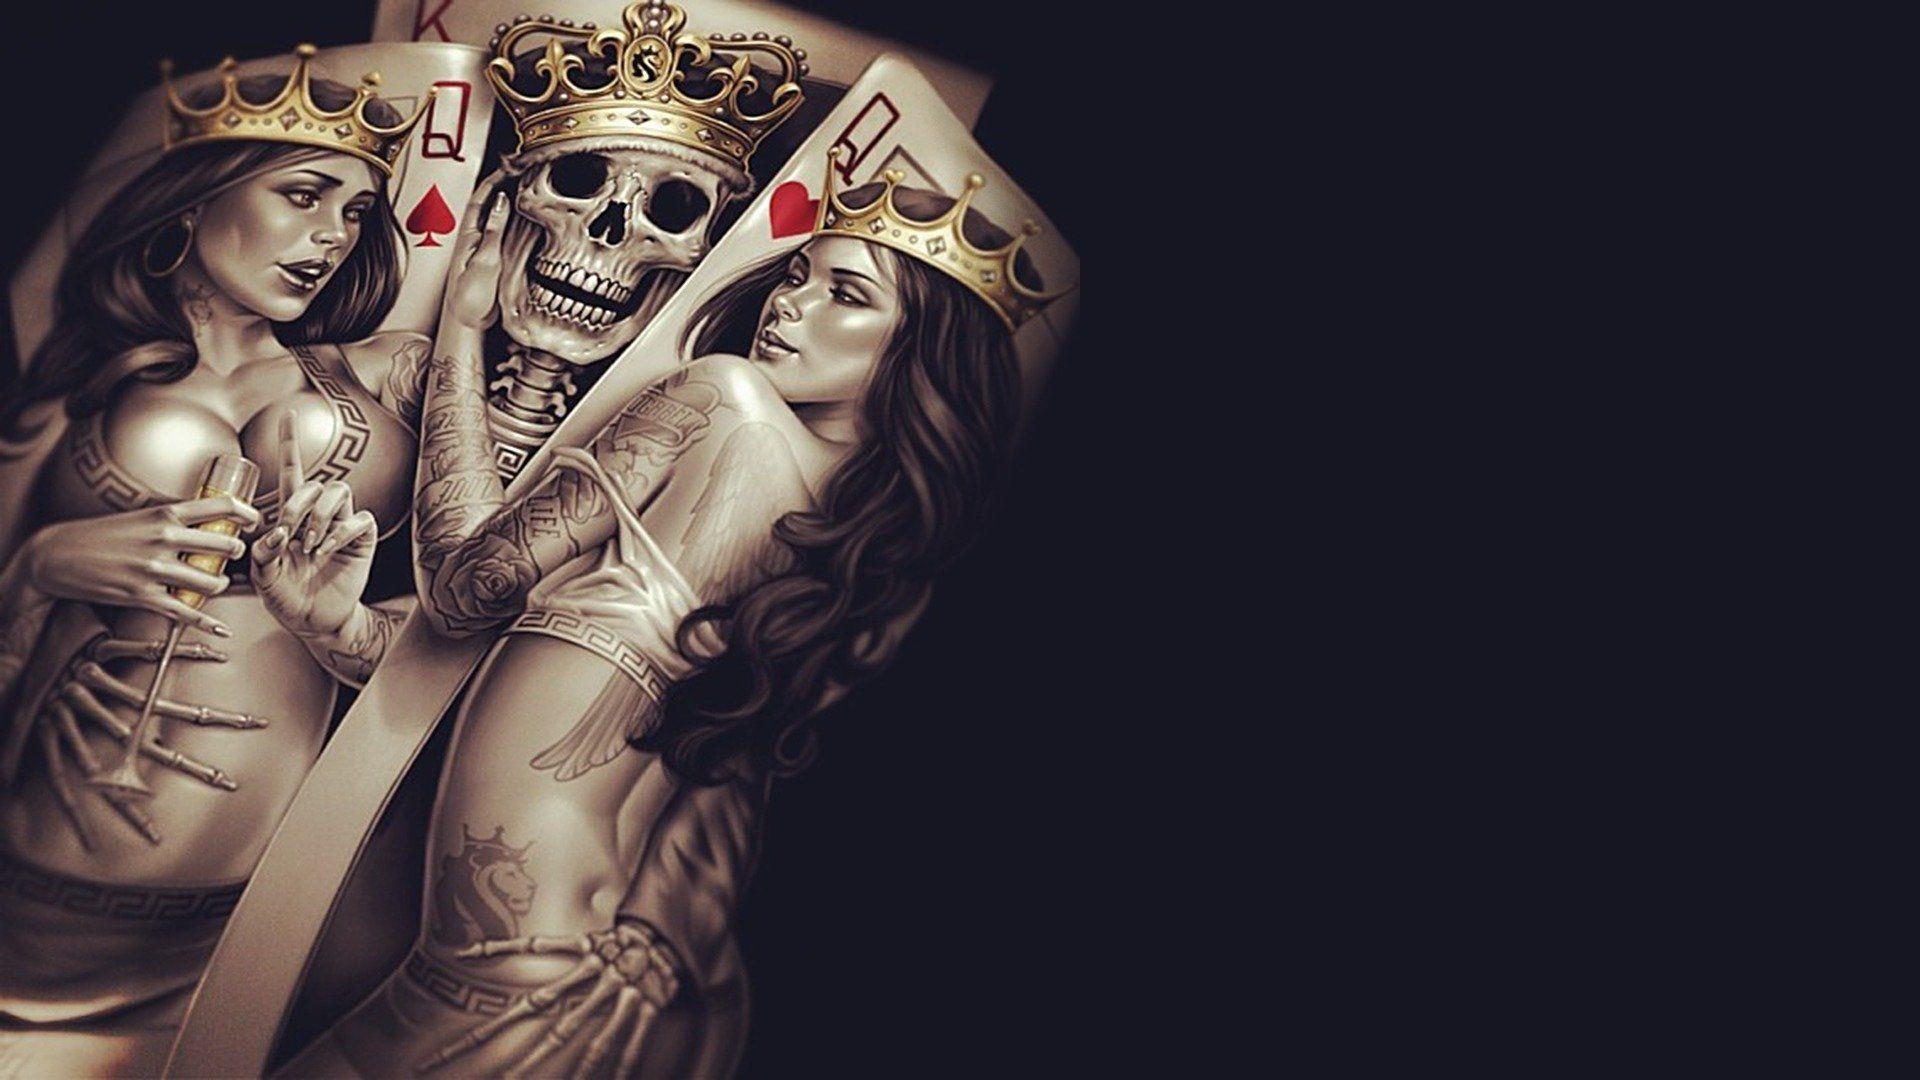 king queen crown poker tattoos skull bones skeleton cup seduction